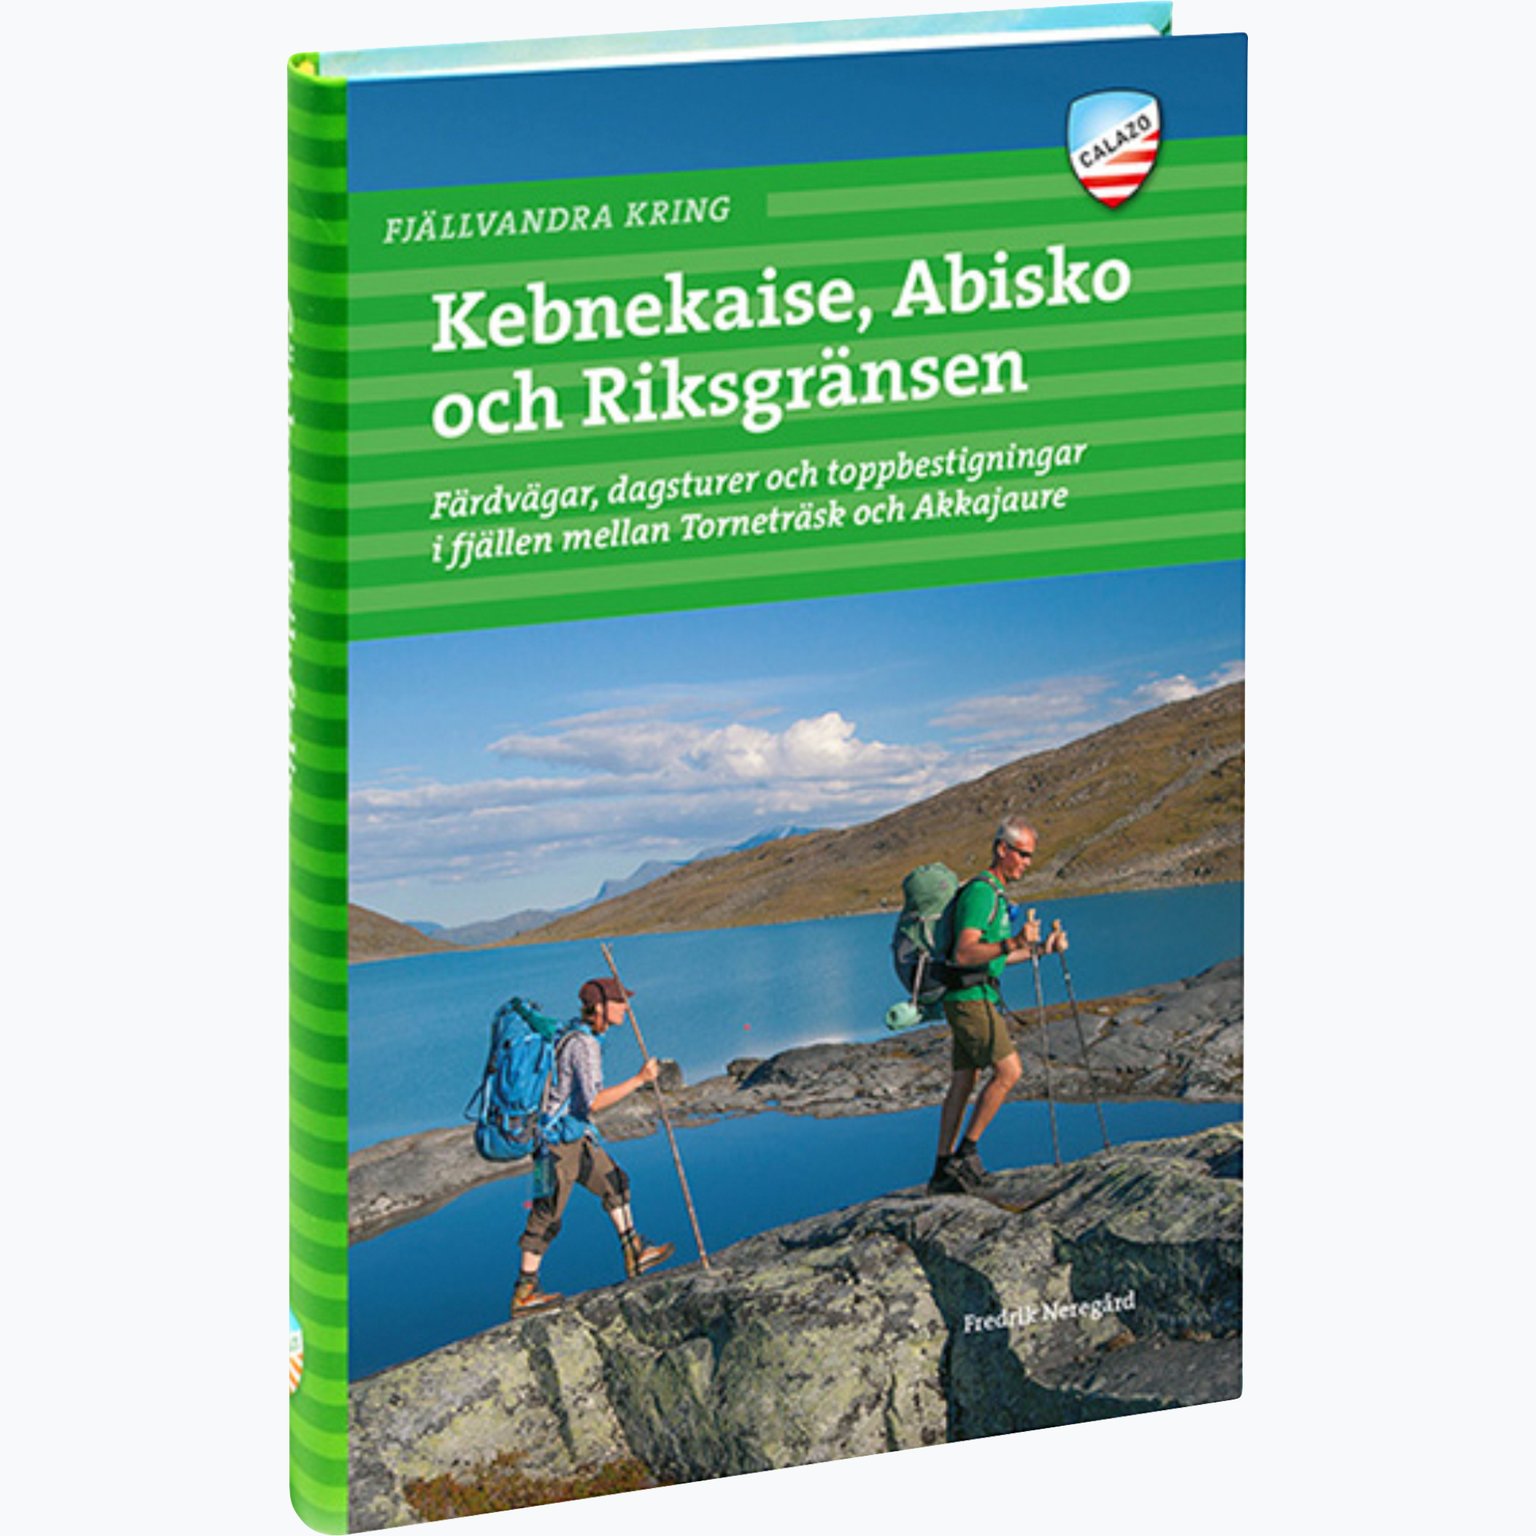 Fjällvandra kring Kebnekaise, Abisko och Riksgränsen 2:a uppl guidebok